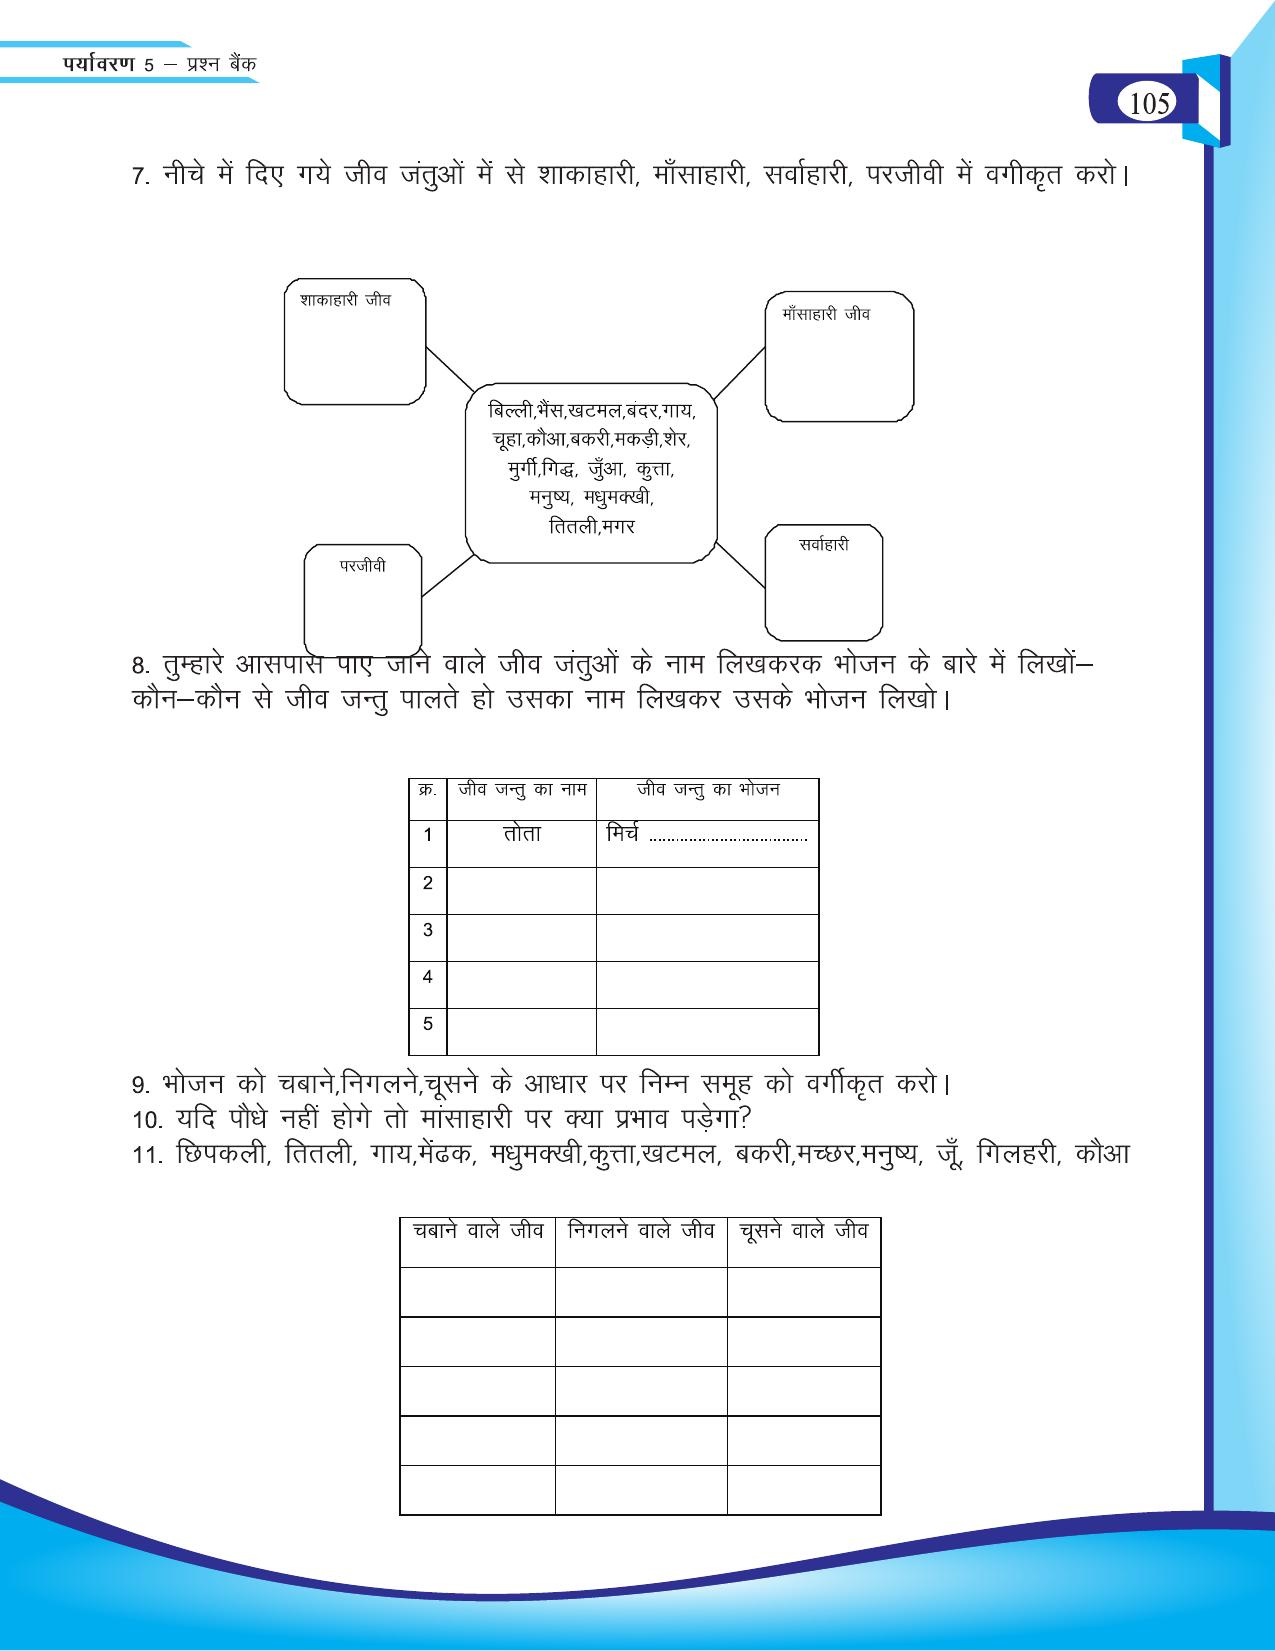 Chhattisgarh Board Class 5 EVS Question Bank 2015-16 - Page 31